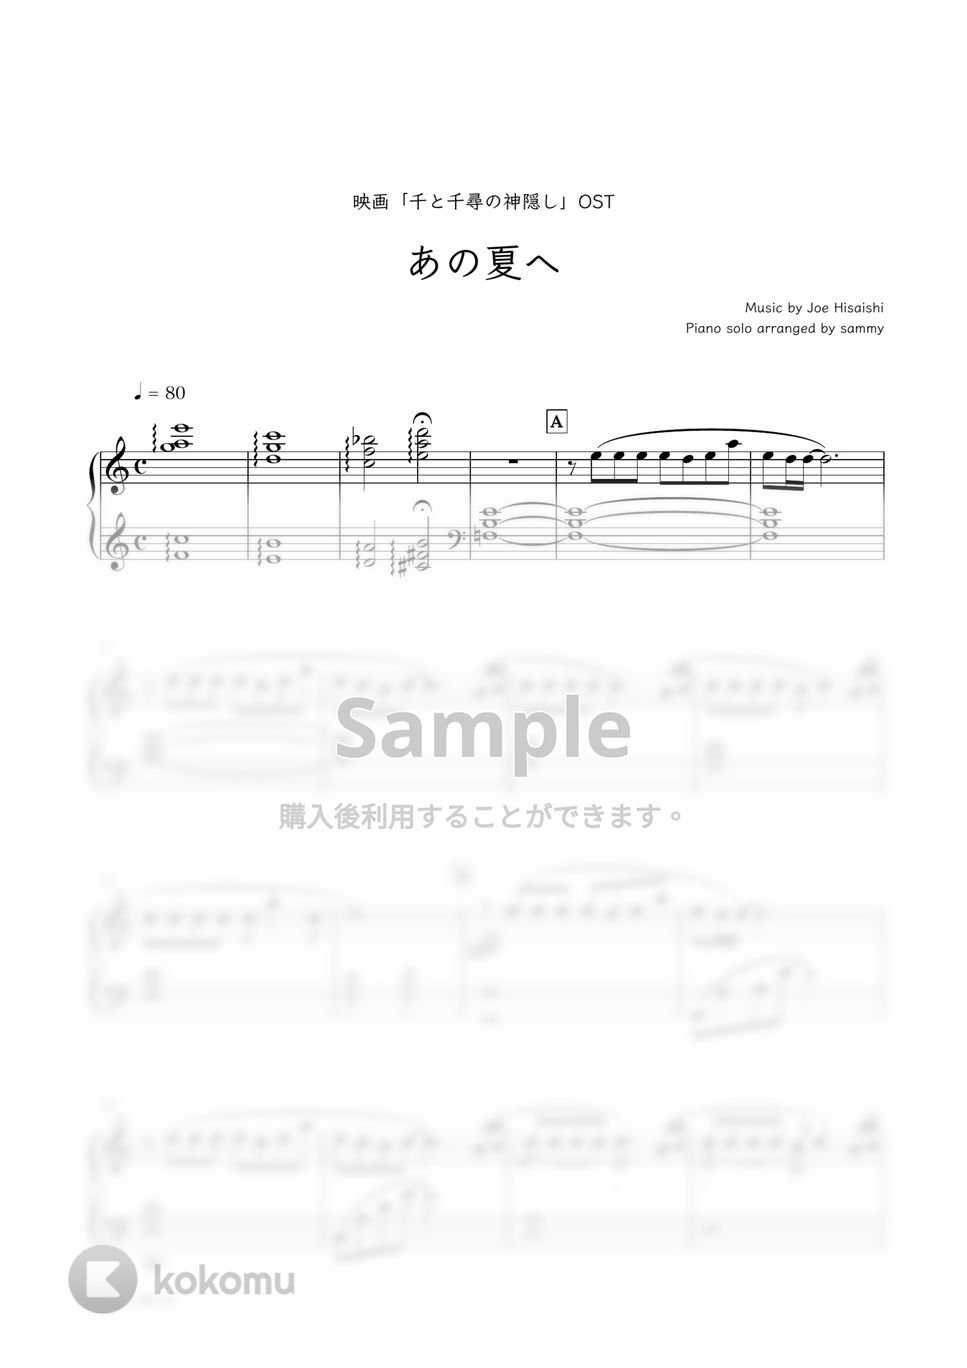 『千と千尋の神隠し』OST - あの夏へ by sammy